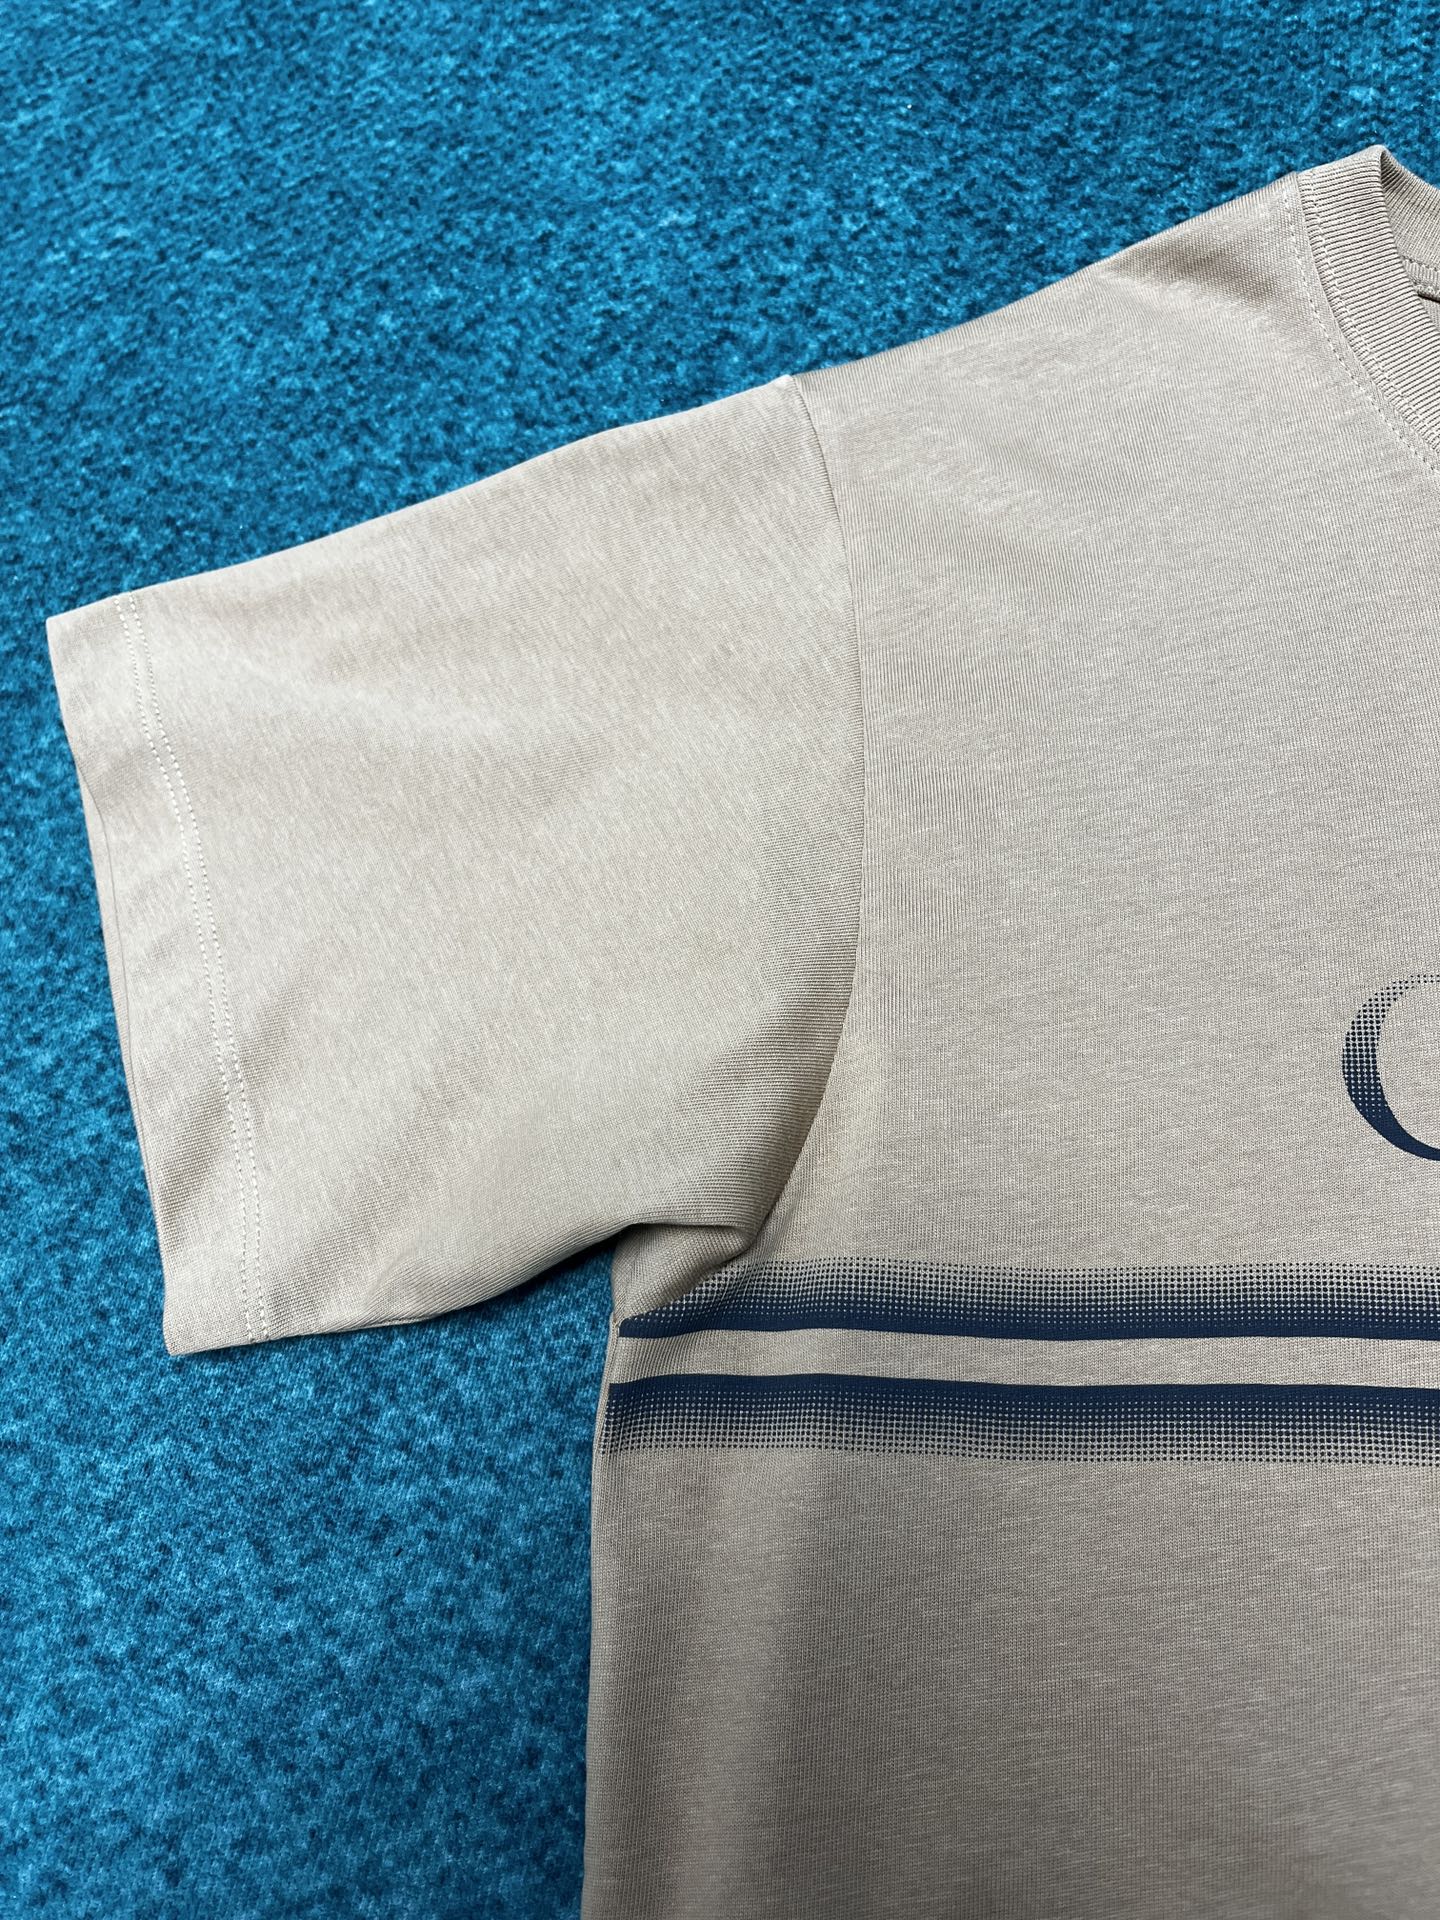 Replica Cotton jersey T-shirt with Gucci print in beige | GUCCI® ZA